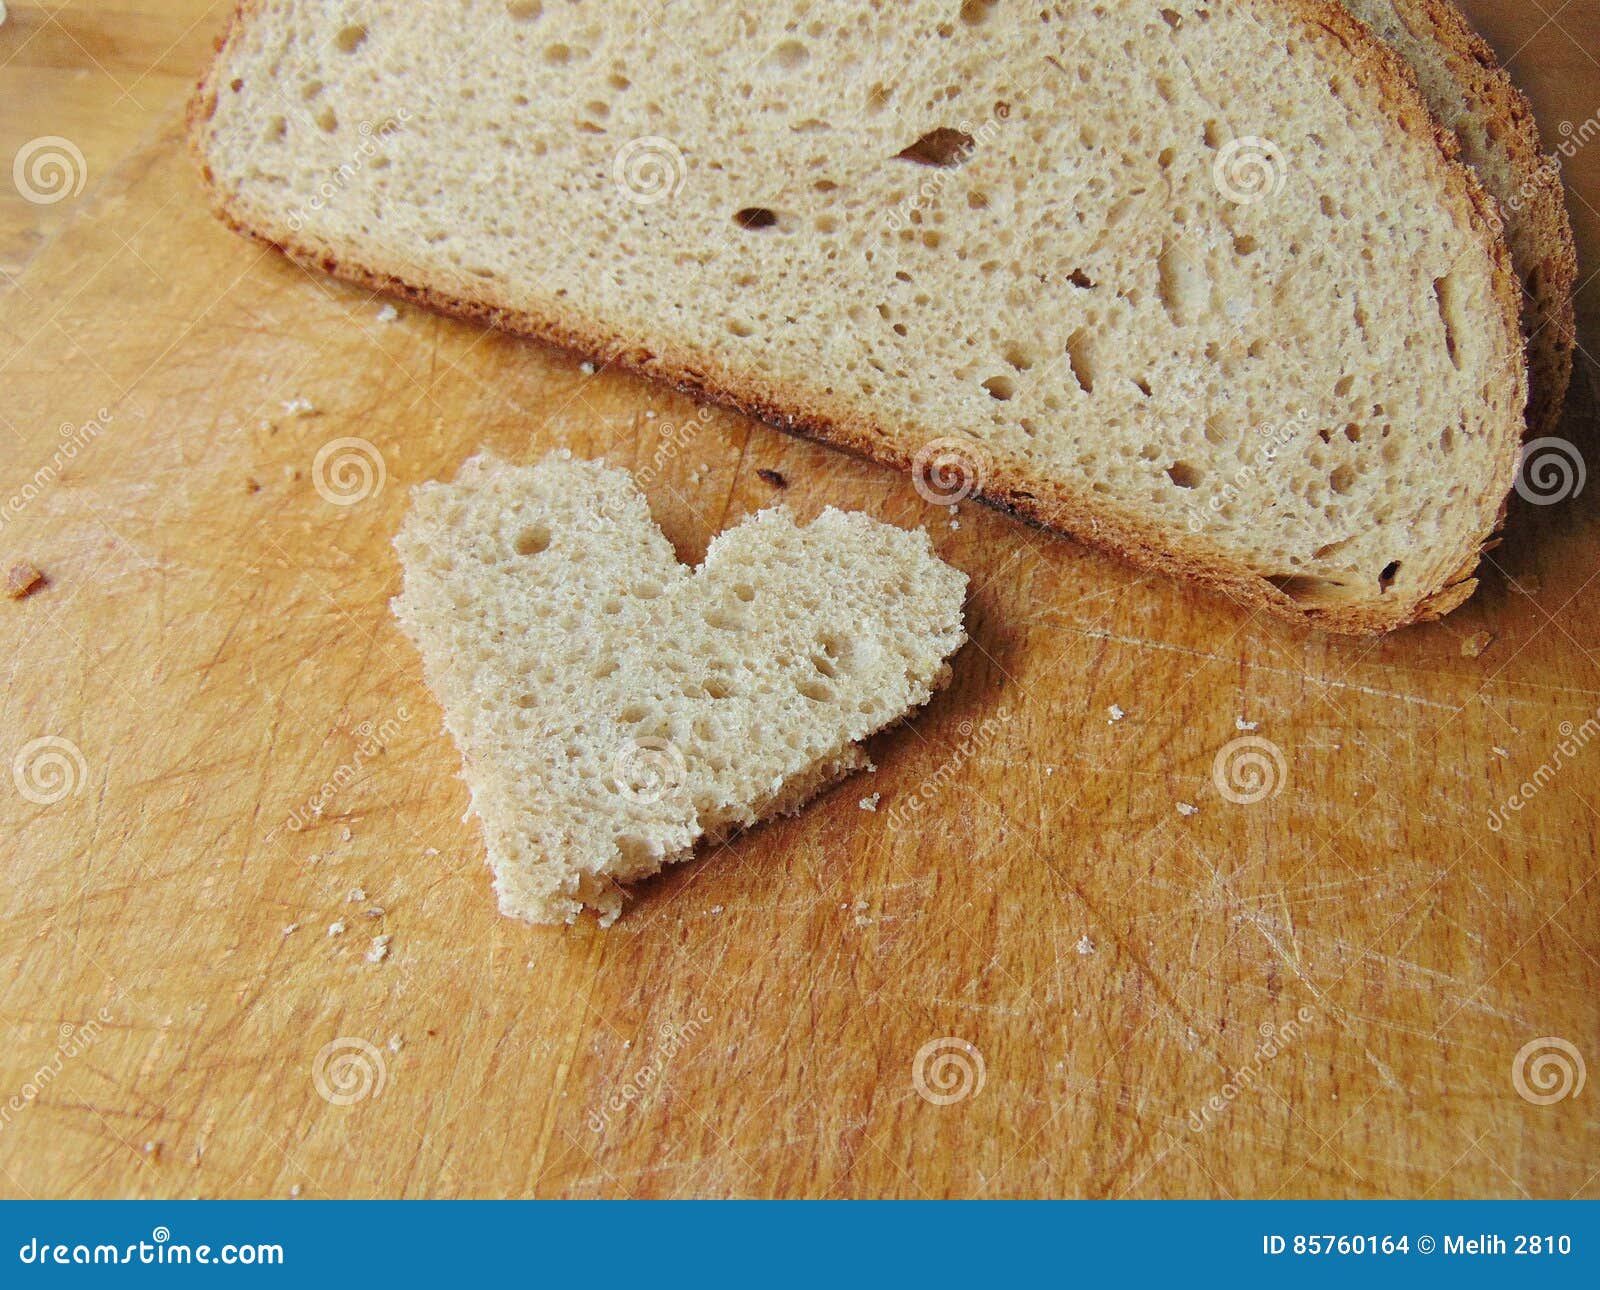 Διαμορφωμένο καρδιά κομμάτι του ψωμιού μπροστά από το πλήρες ψωμί. Η καρδιά διαμόρφωσε το κομμάτι του ψωμιού βάζοντας μπροστά από το πλήρες ψωμί στον ξύλινο τέμνοντα πίνακα